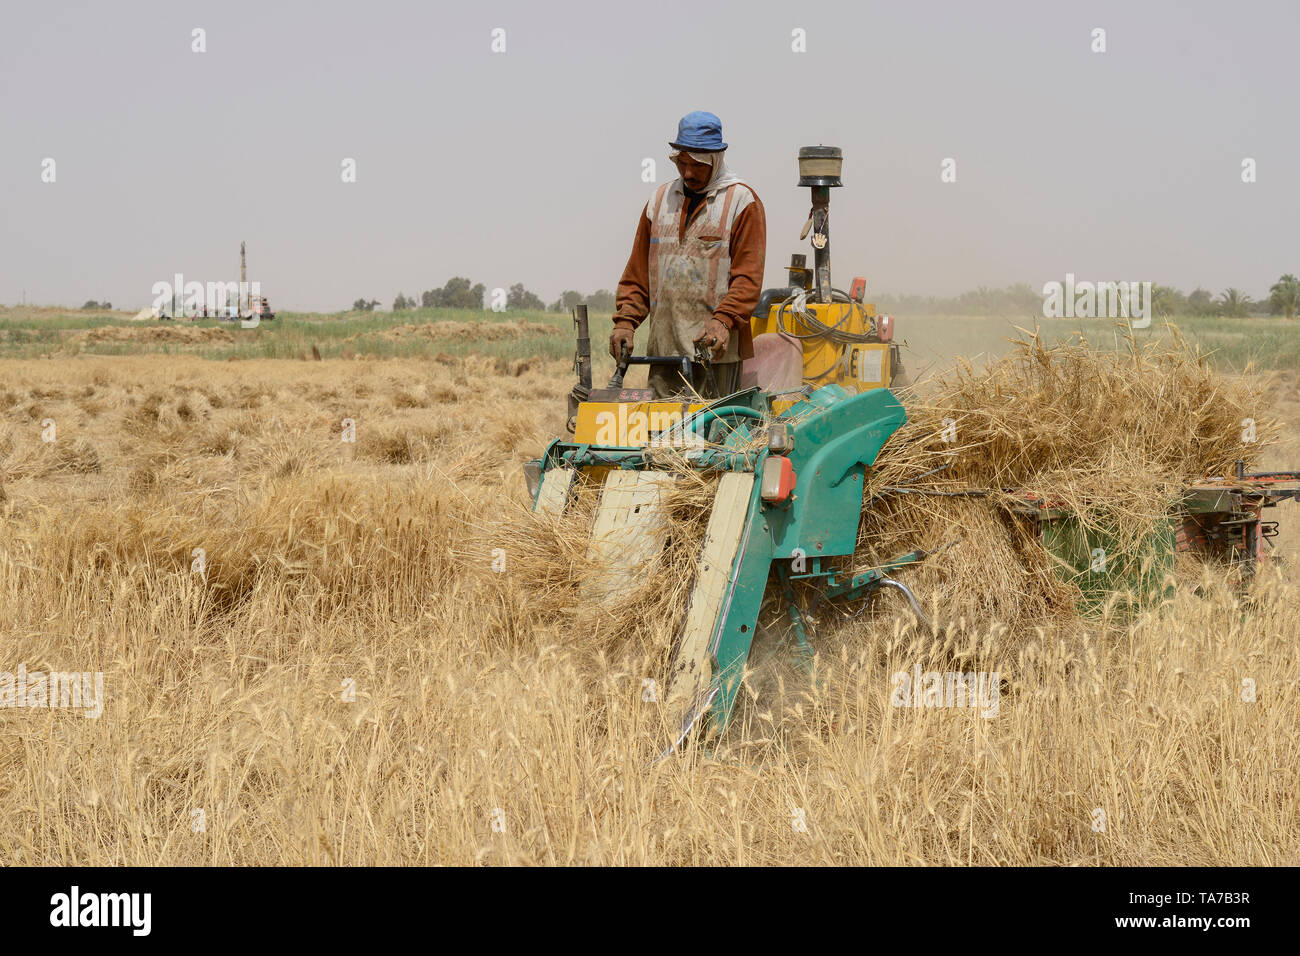 Ägypten, Oase Farafra, Wüste, Landwirtschaft, kleine Bauern ernten Weizen/AEGYPTEN, Oase Farafra, Landwirtschaft in der Wueste, Ernte von Weizen Stockfoto